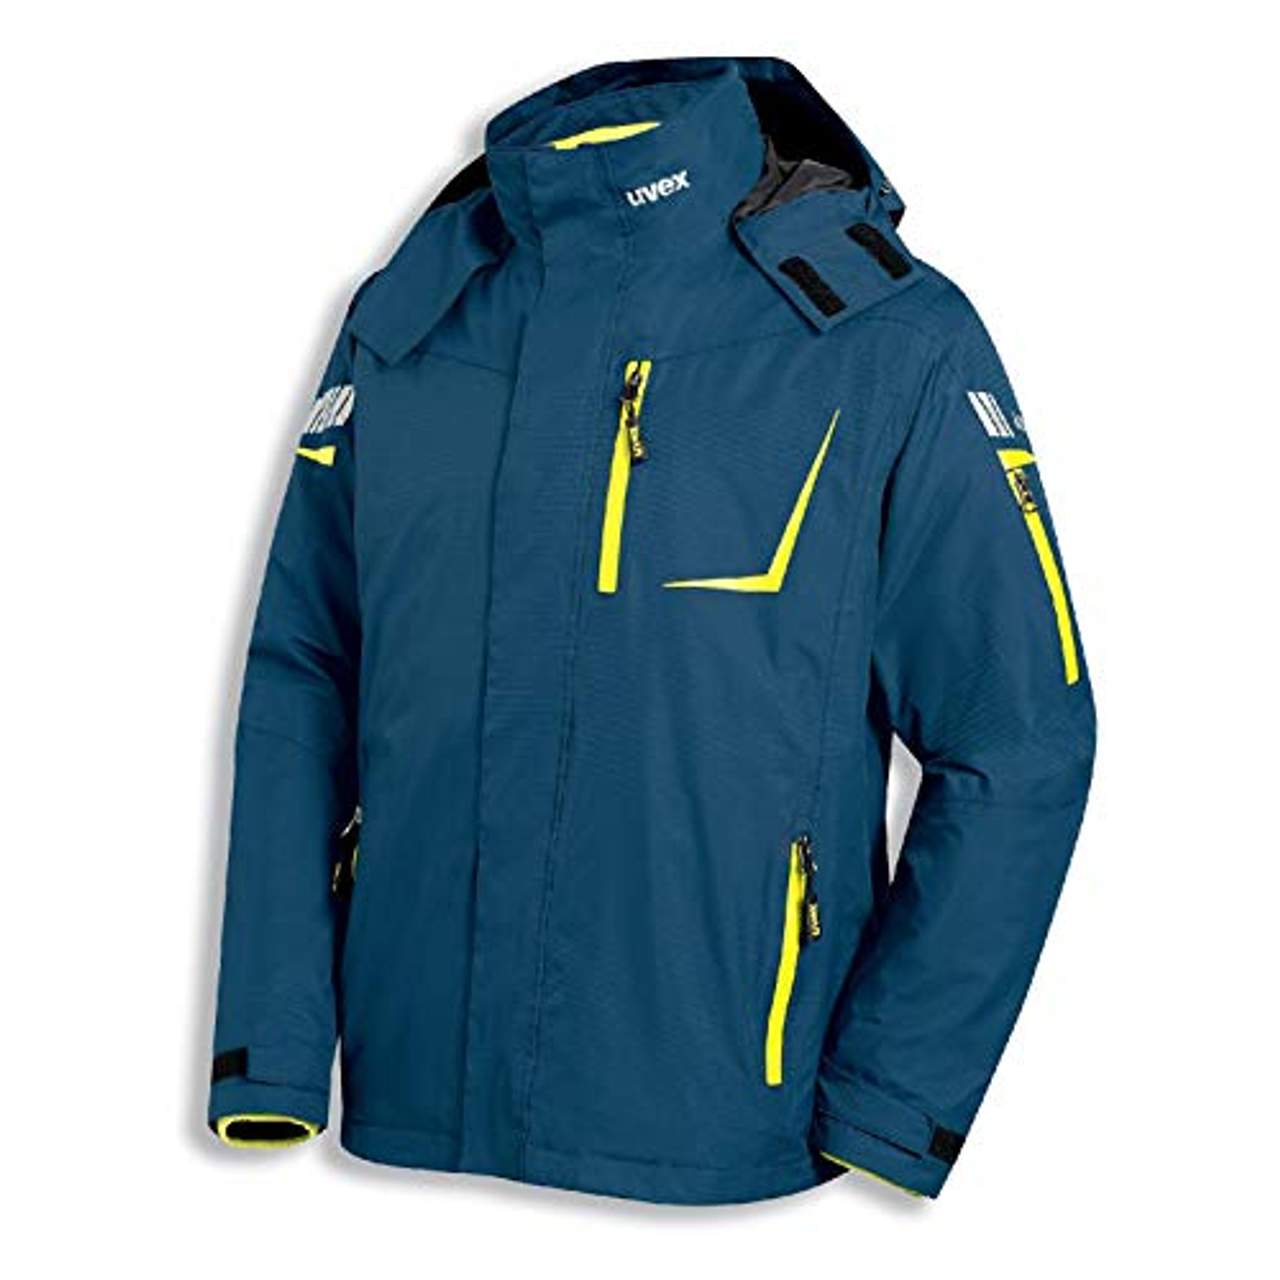 M-XXXL Arbeitsjacke Jacke Winter Arbeitskleidung Profi Qualität Grau Schwarz Gr 